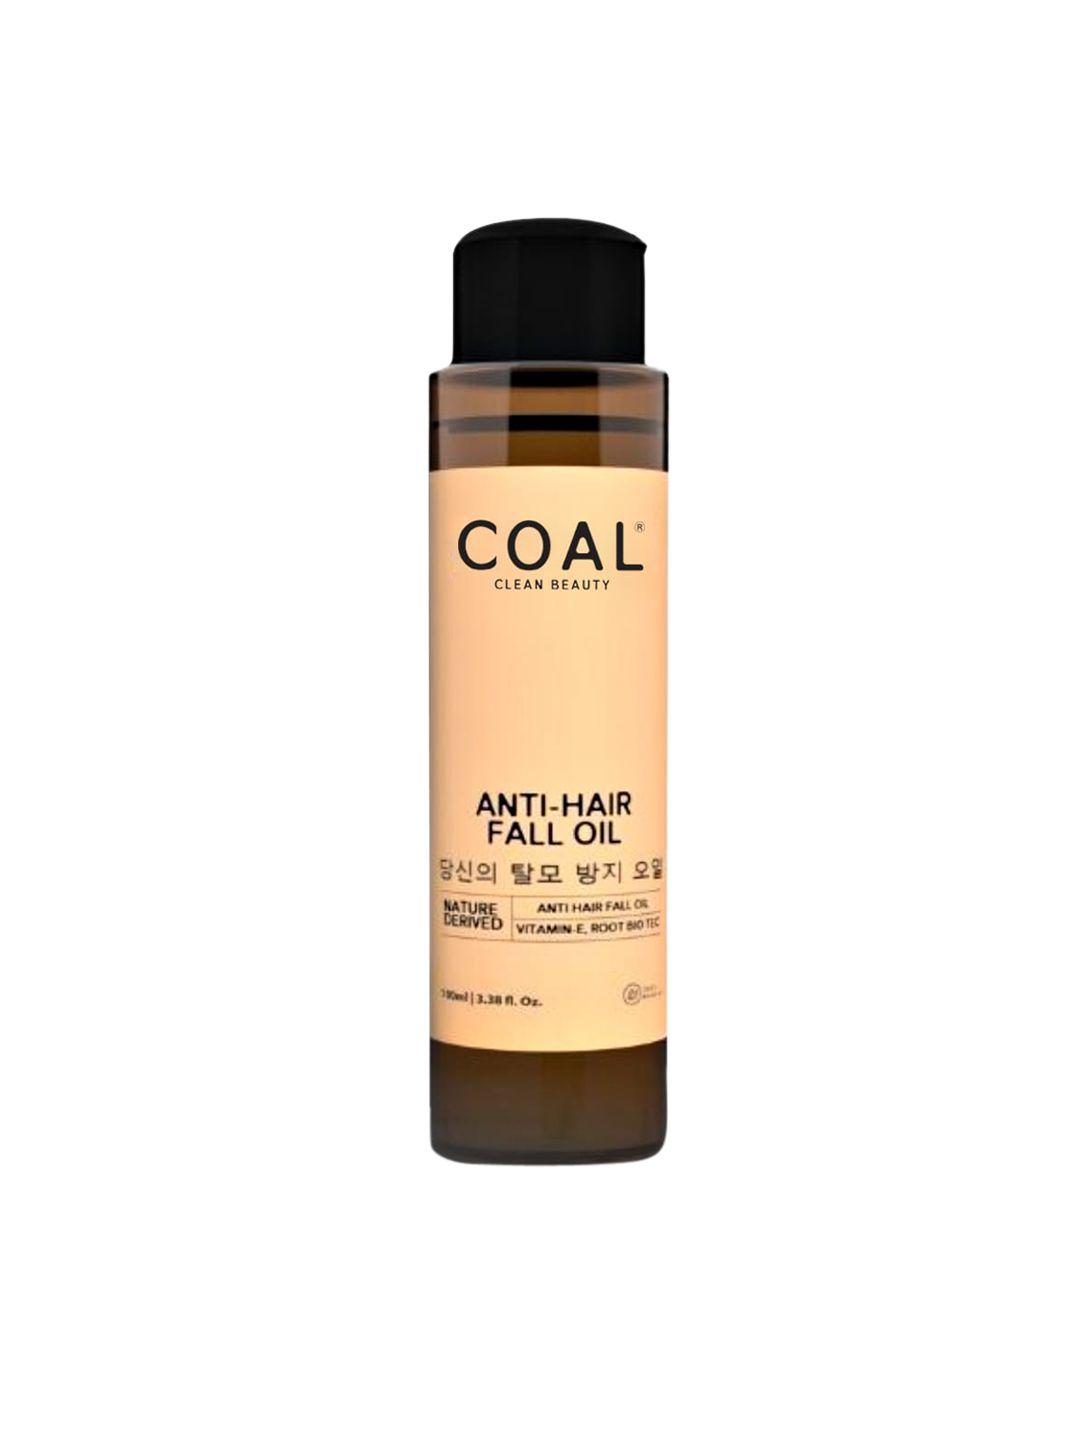 coal clean beauty anti-hair fall oil